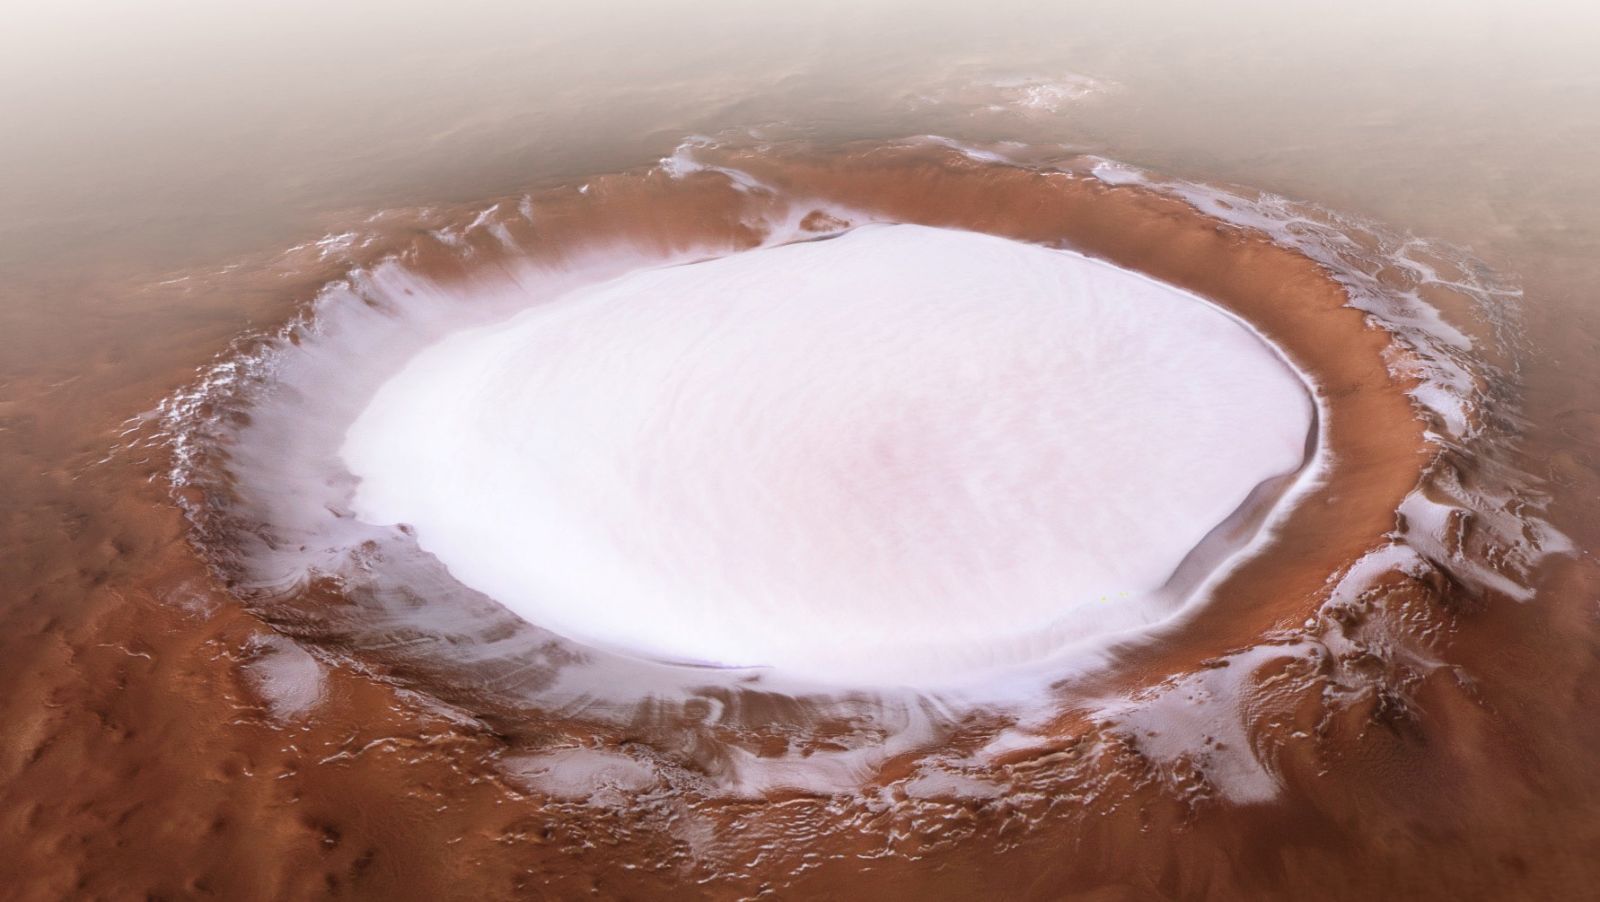 Hình ảnh miệng núi lửa trên sao Hỏa cực đẹp